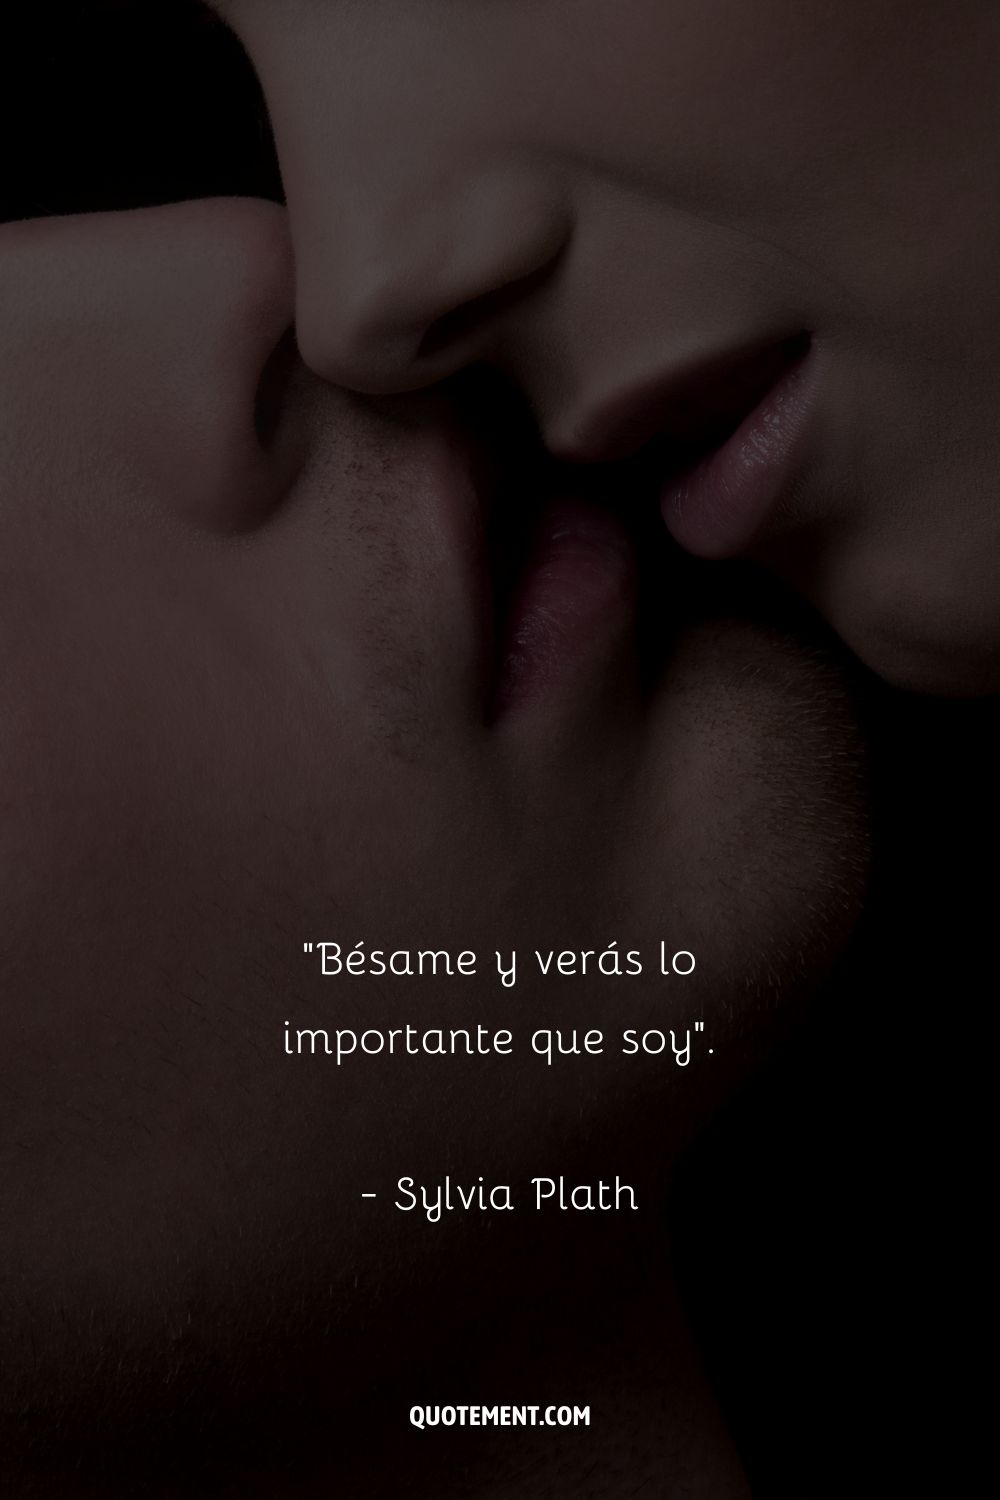 Bésame y verás lo importante que soy. - Sylvia Plath